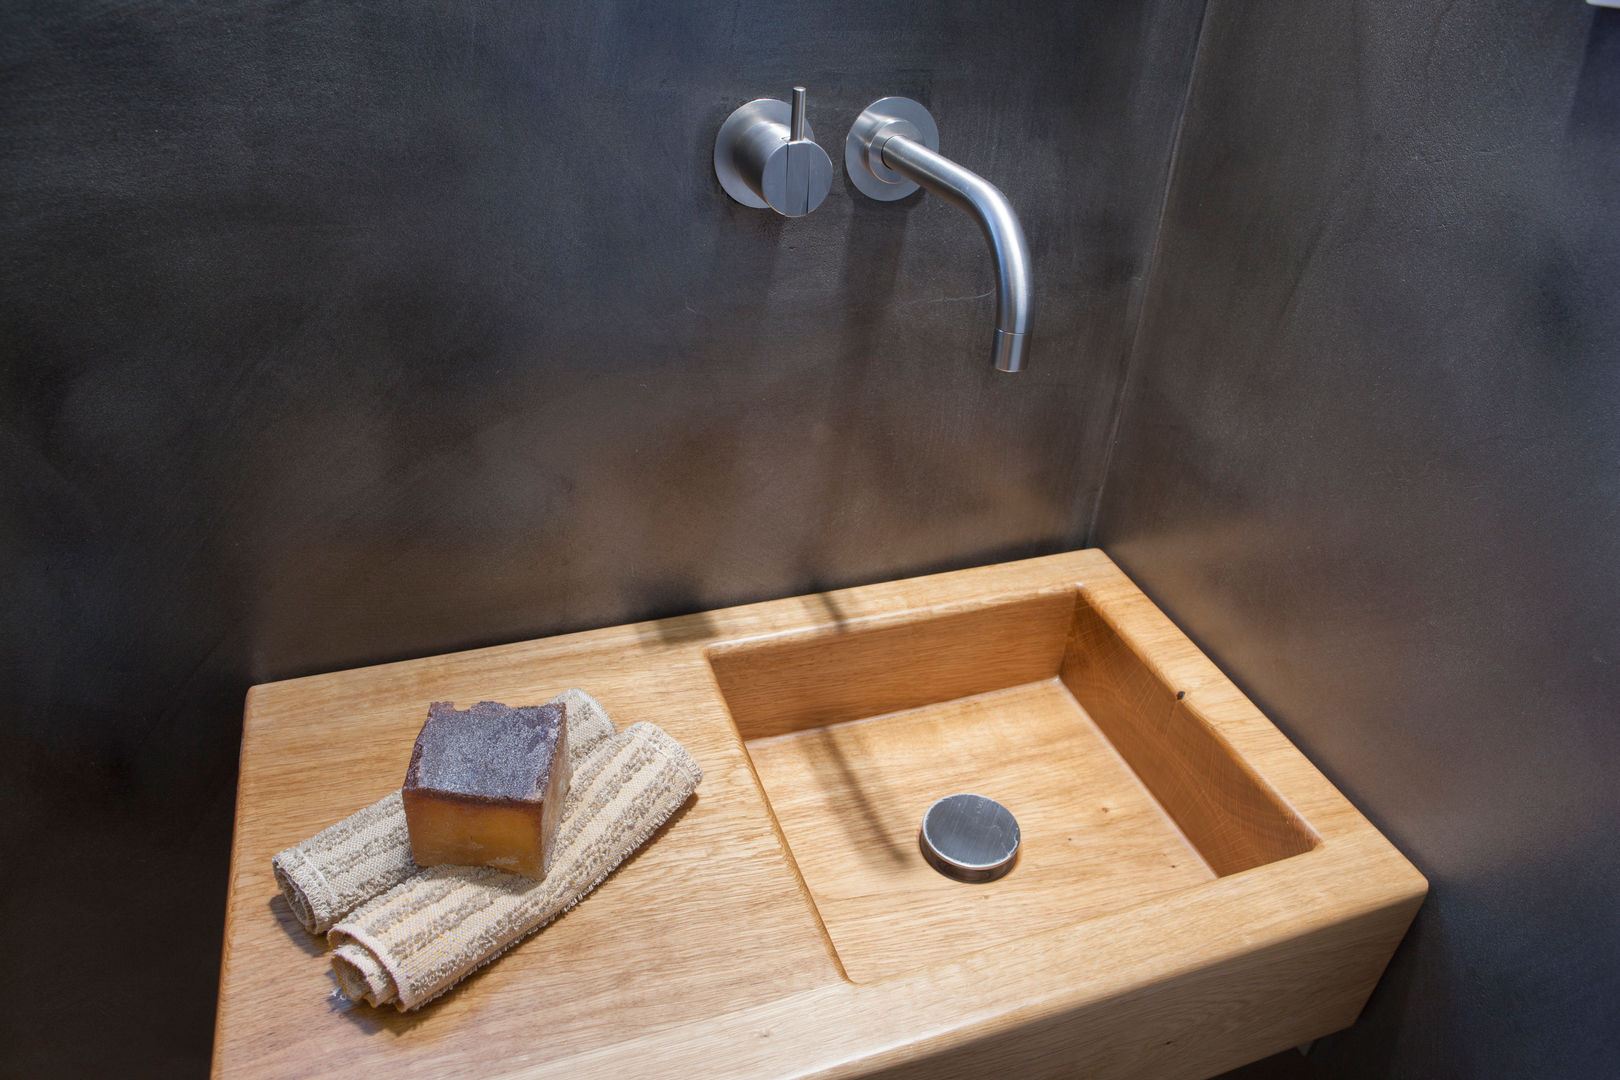 Holz als Waschtisch im Gäste WC Design by Torsten Müller Ванная комната в стиле минимализм Раковины